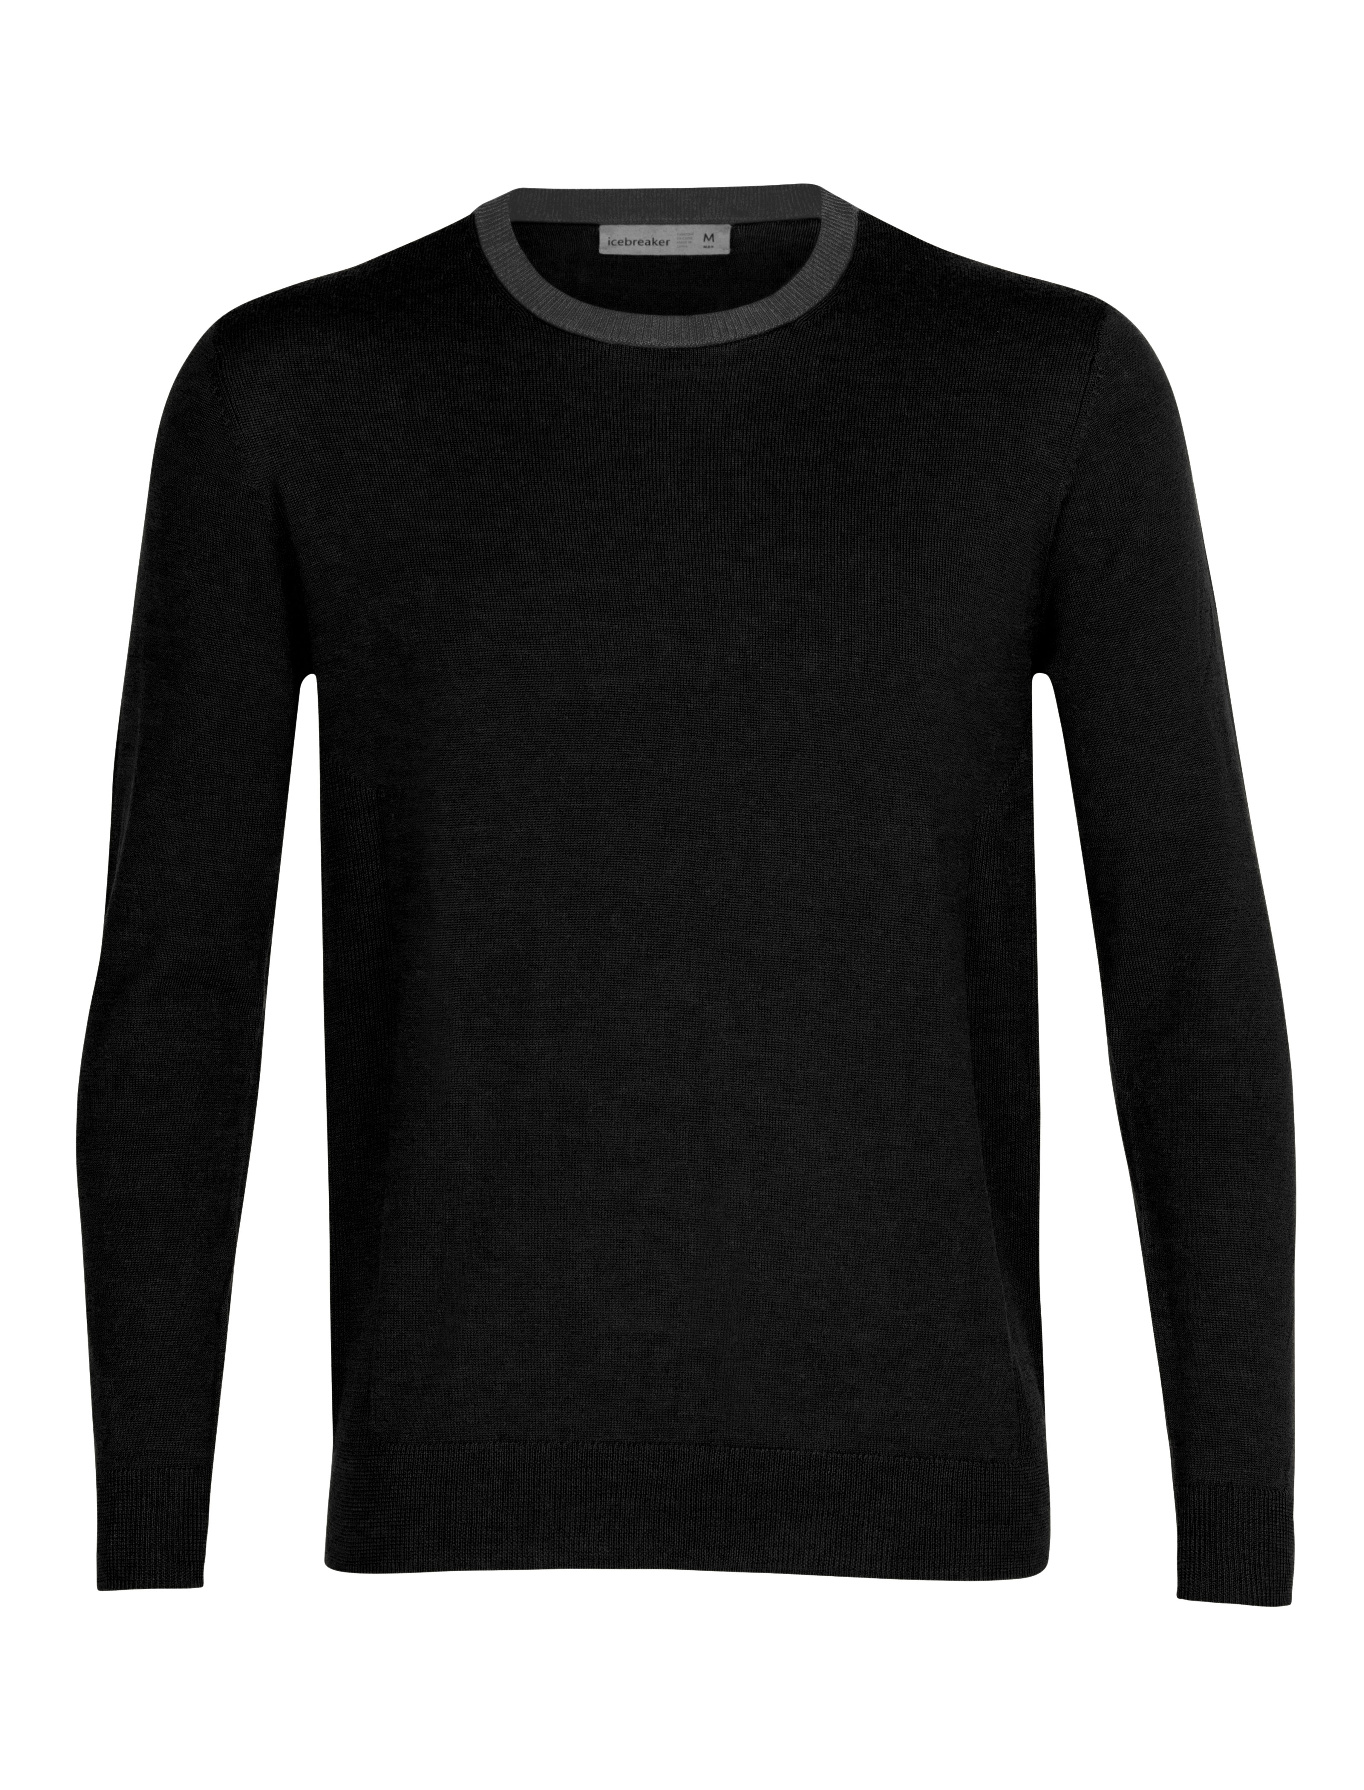 pánský svetr ICEBREAKER Mens Shearer Crewe Sweater, Black/Gritstone Heather/Cb velikost: L